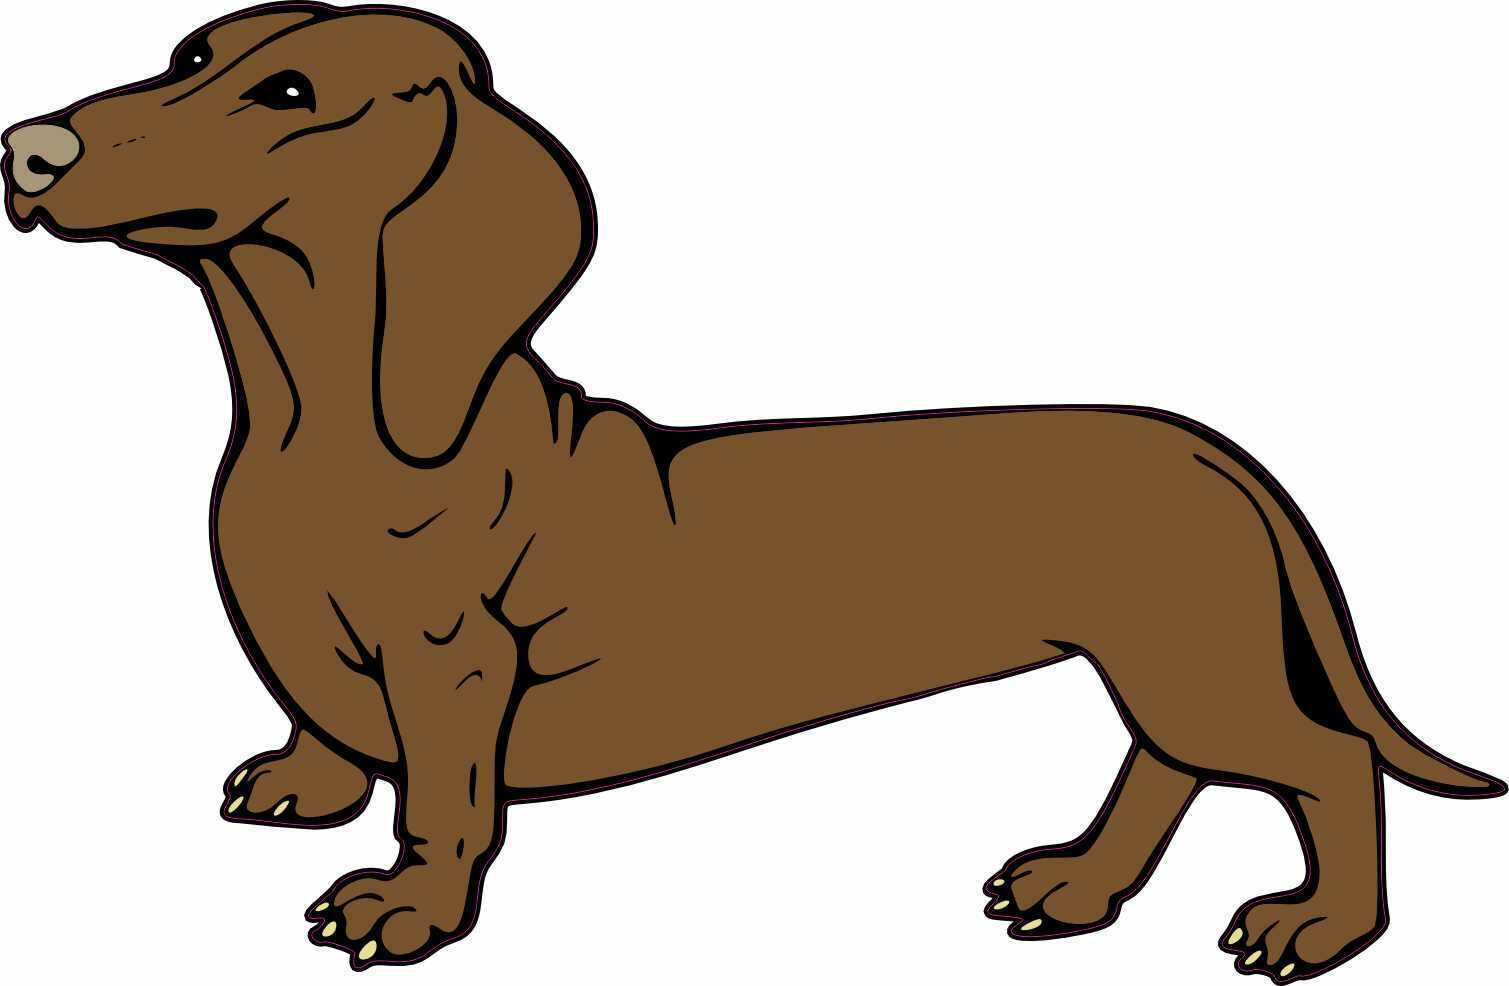 StickerTalk Dachshund Doxie Weiner Sausage Badger Dog Sticker, 5 inches x 3.2...